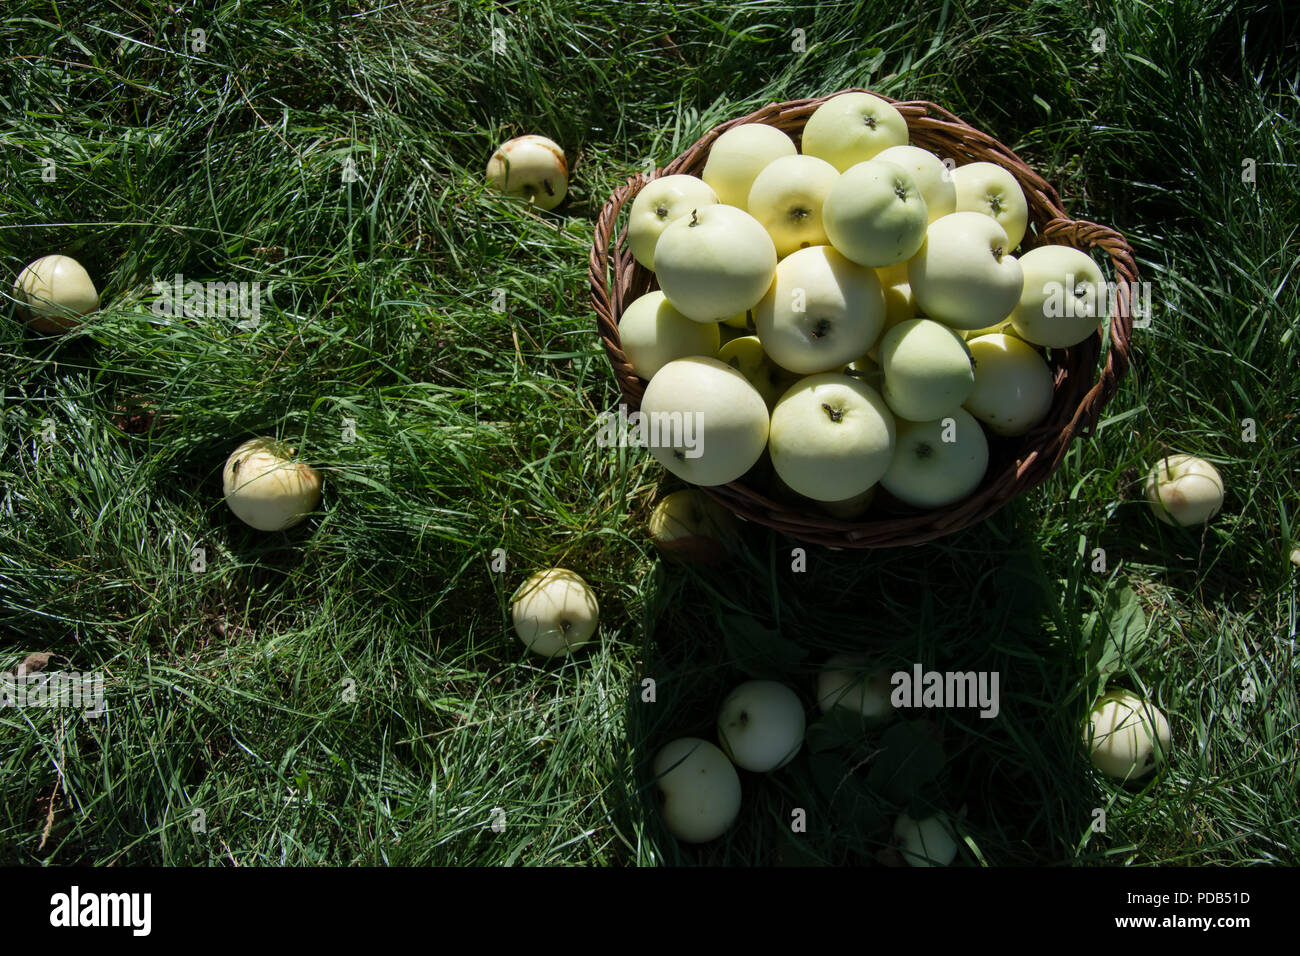 Weidenkorb voller Licht grüne Äpfel - stehen auf Gras, die von gefallenen Äpfeln umgeben - Bird's Eye View Stockfoto